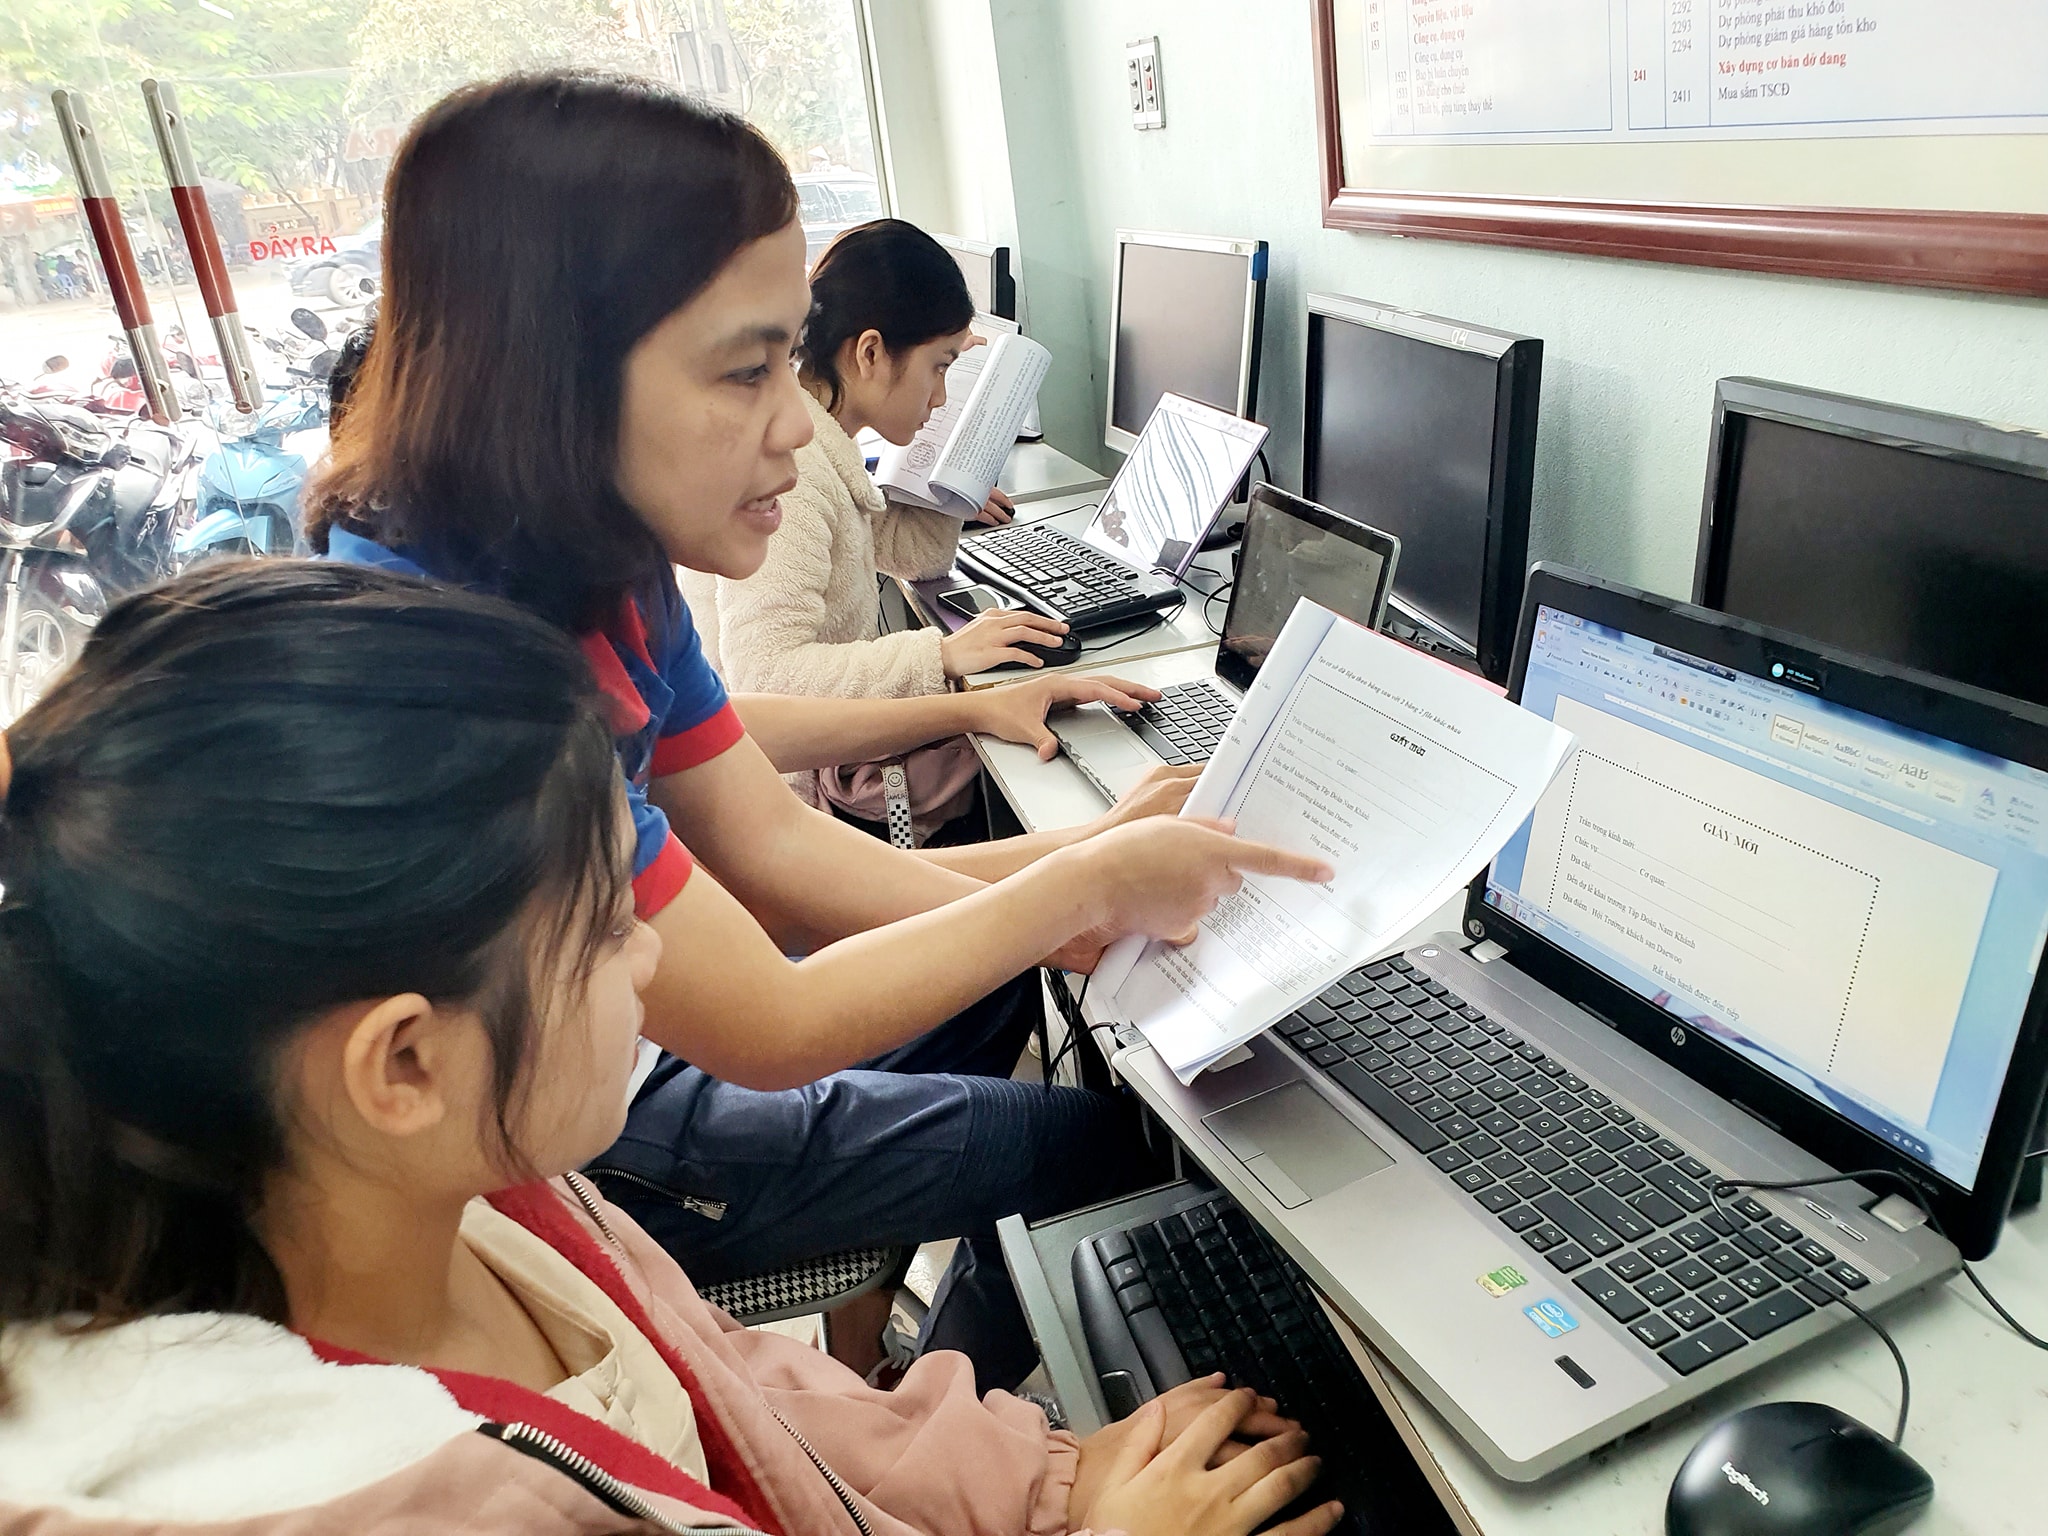 Trung tâm tin học tại Thanh Hóa muốn tìm lại những file Excel, Word hoặc PowerPoint chưa kịp lưu đó thì phải làm thế nào?